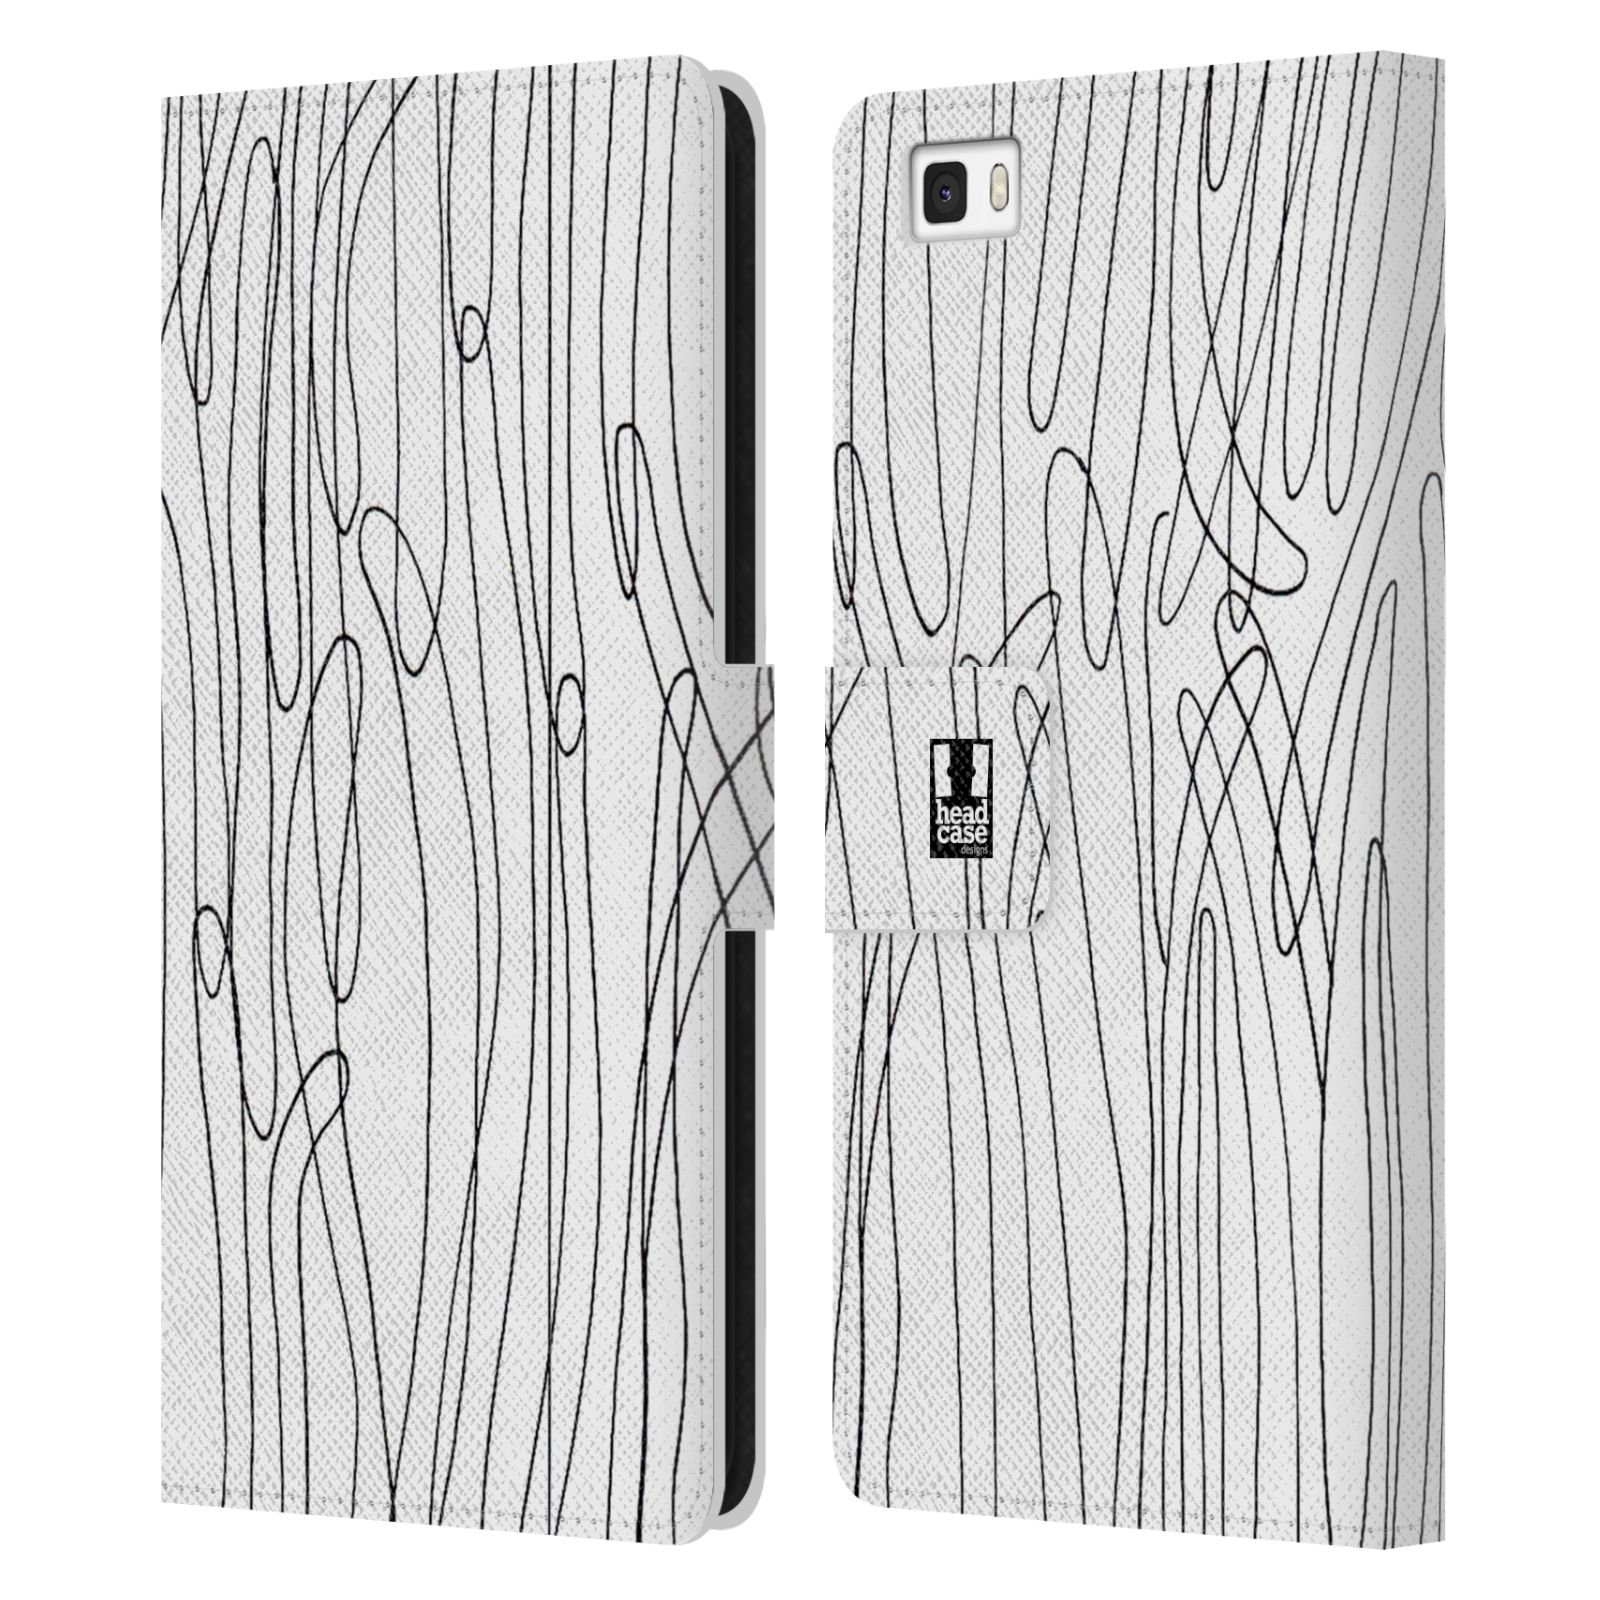 HEAD CASE Flipové pouzdro pro mobil Huawei P8 LITE kresba a čmáranice vlny černá a bílá